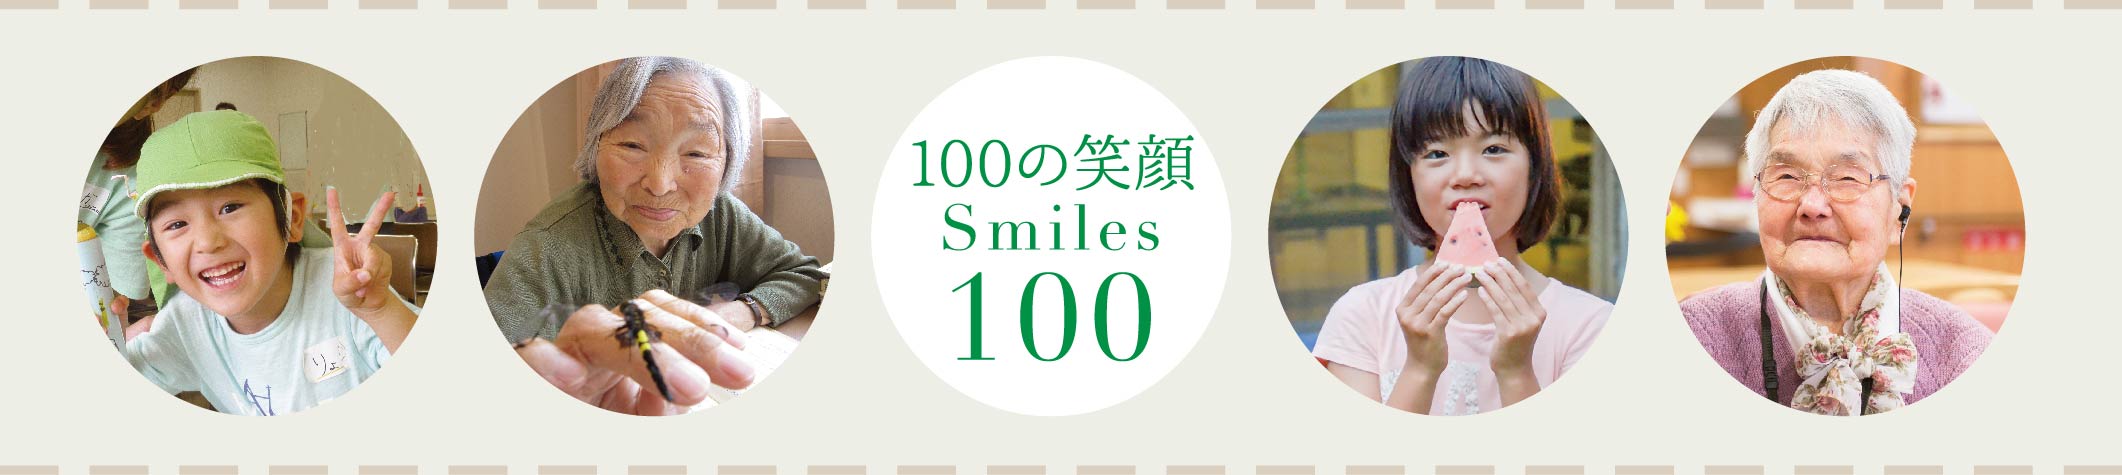 100の笑顔